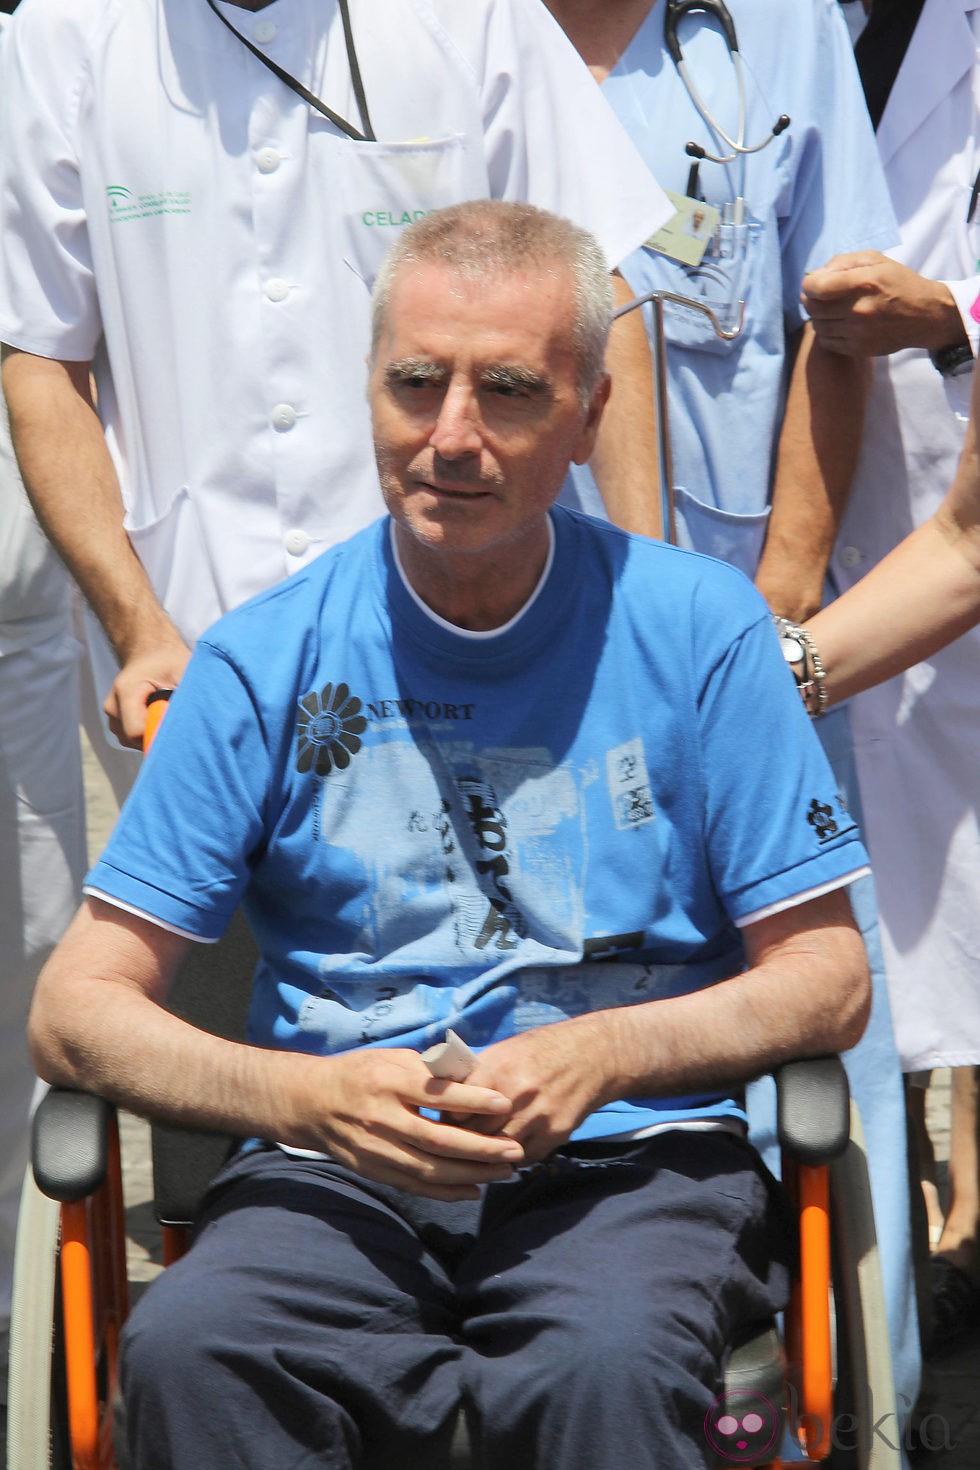 José Ortega Cano en silla de ruedas